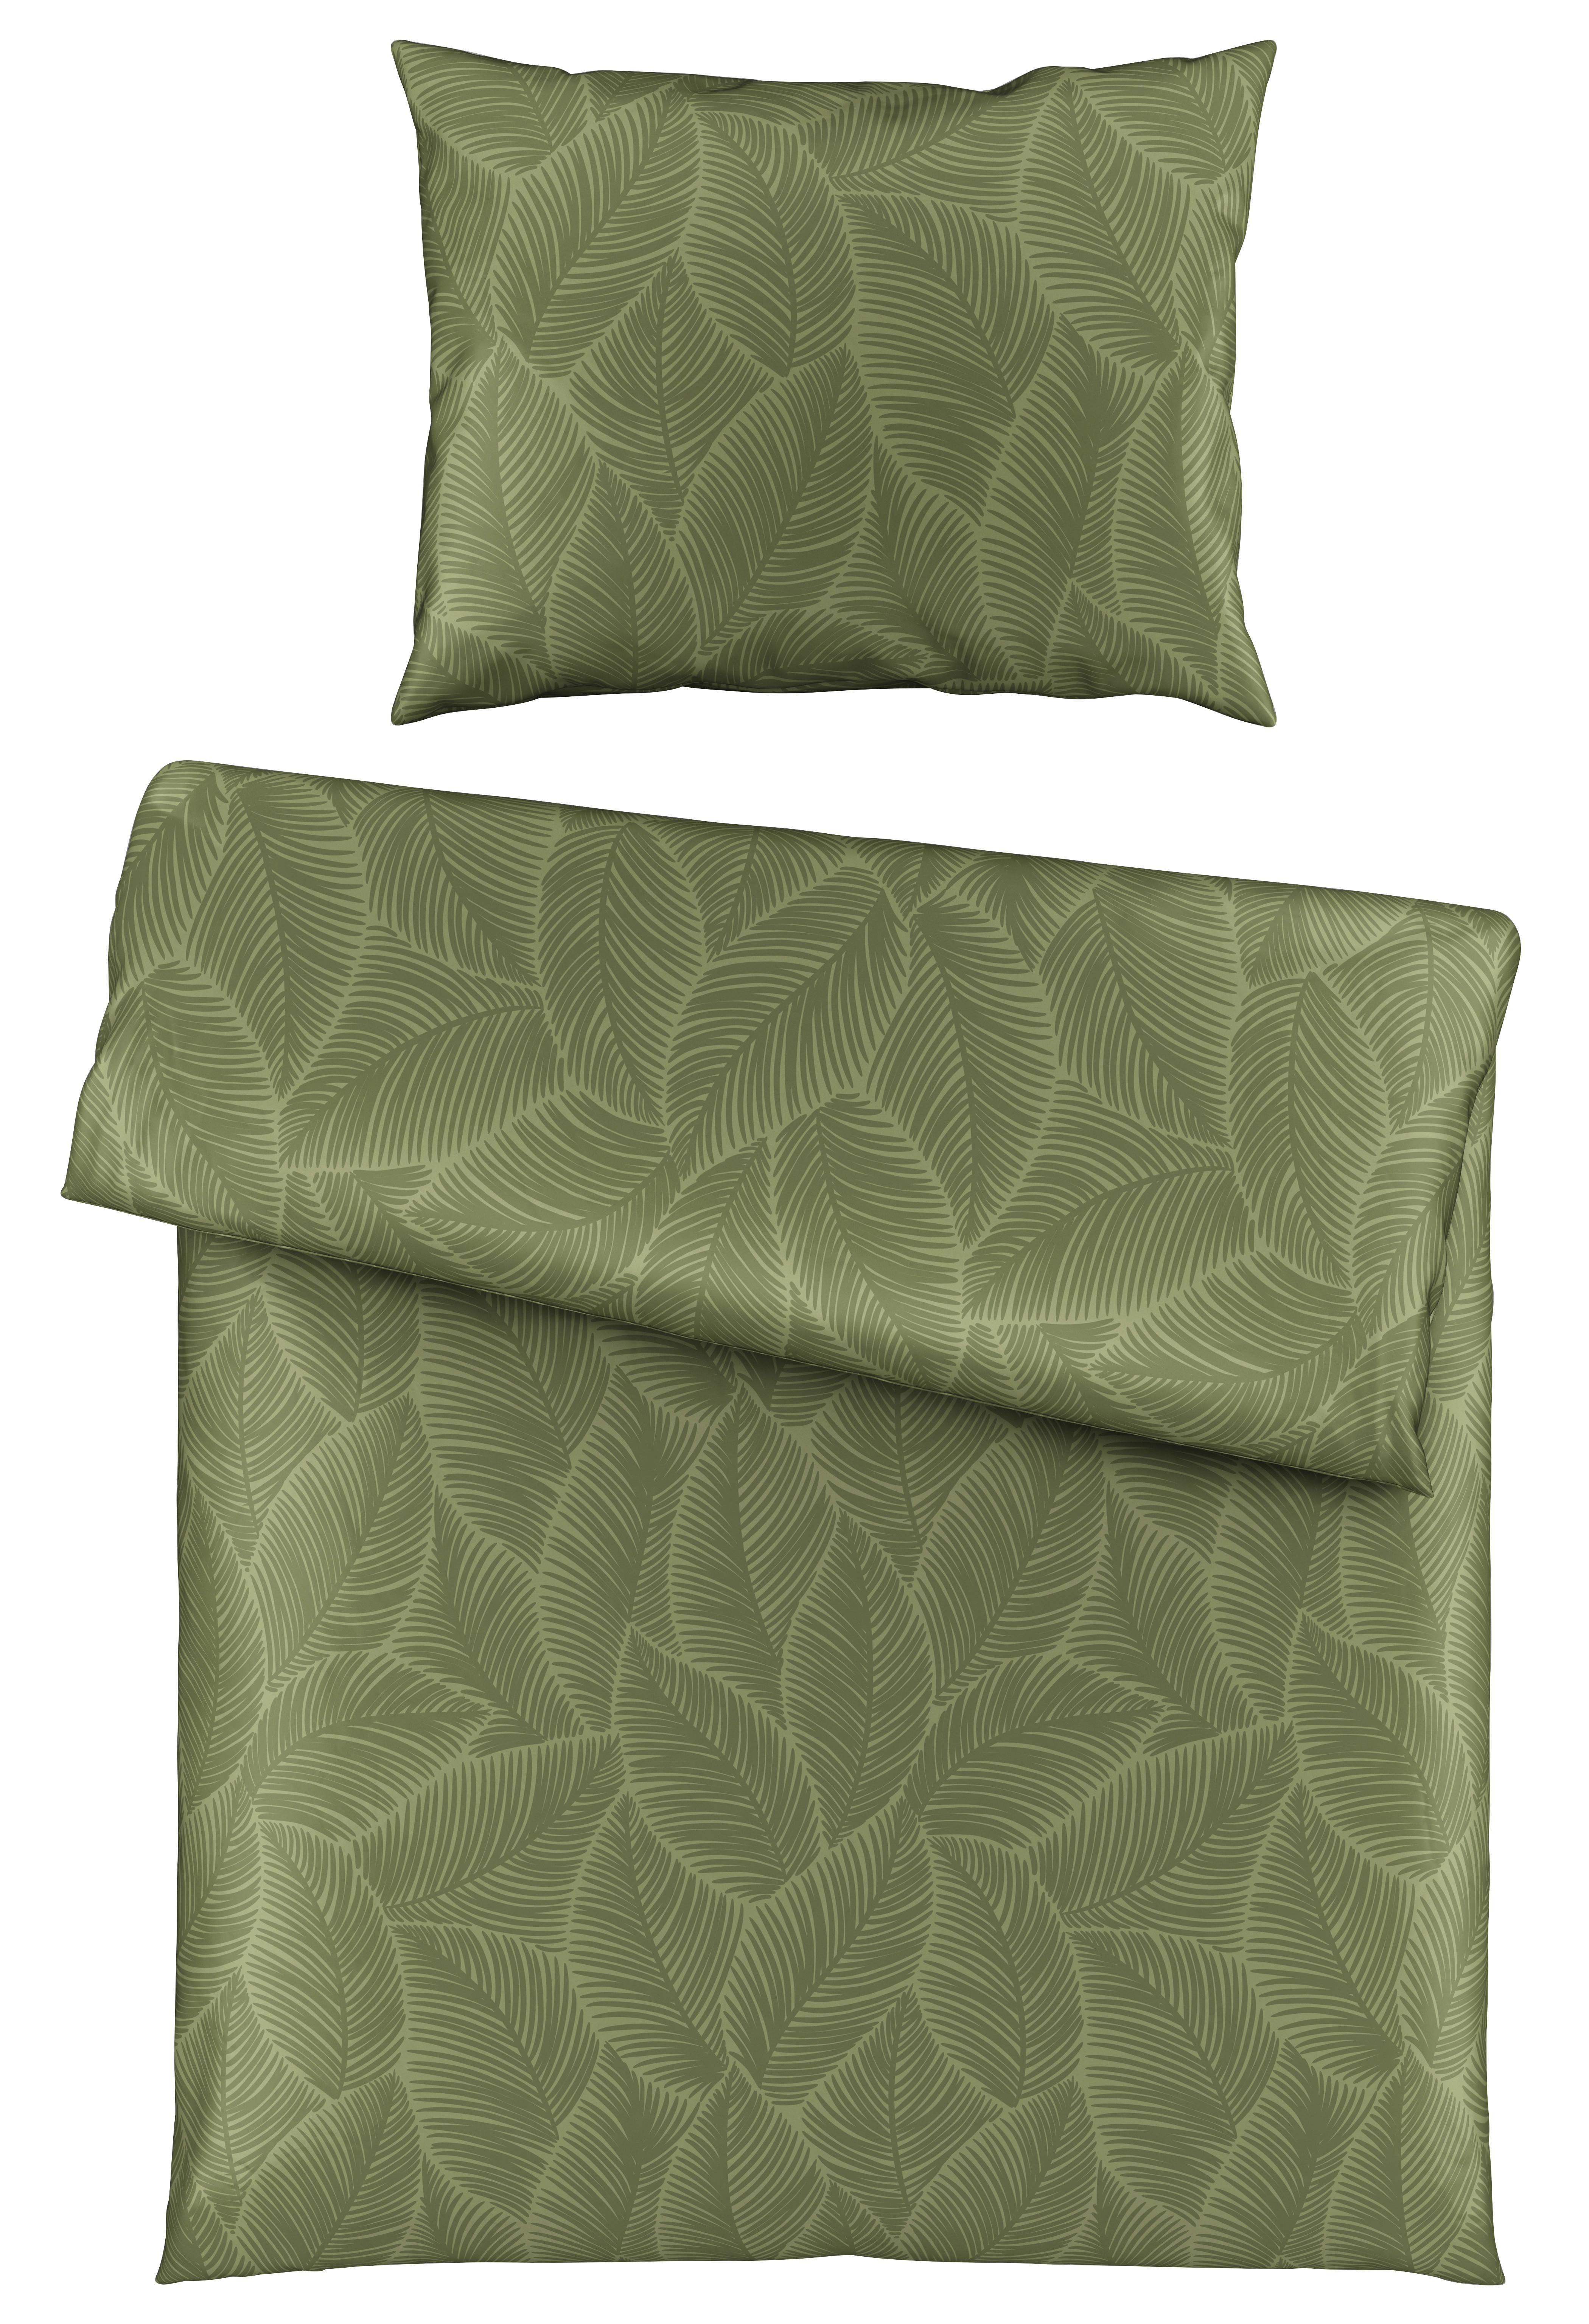 Povlečení Alex Design, 140/200cm - olivově zelená, Moderní, textil (140/200cm) - Premium Living